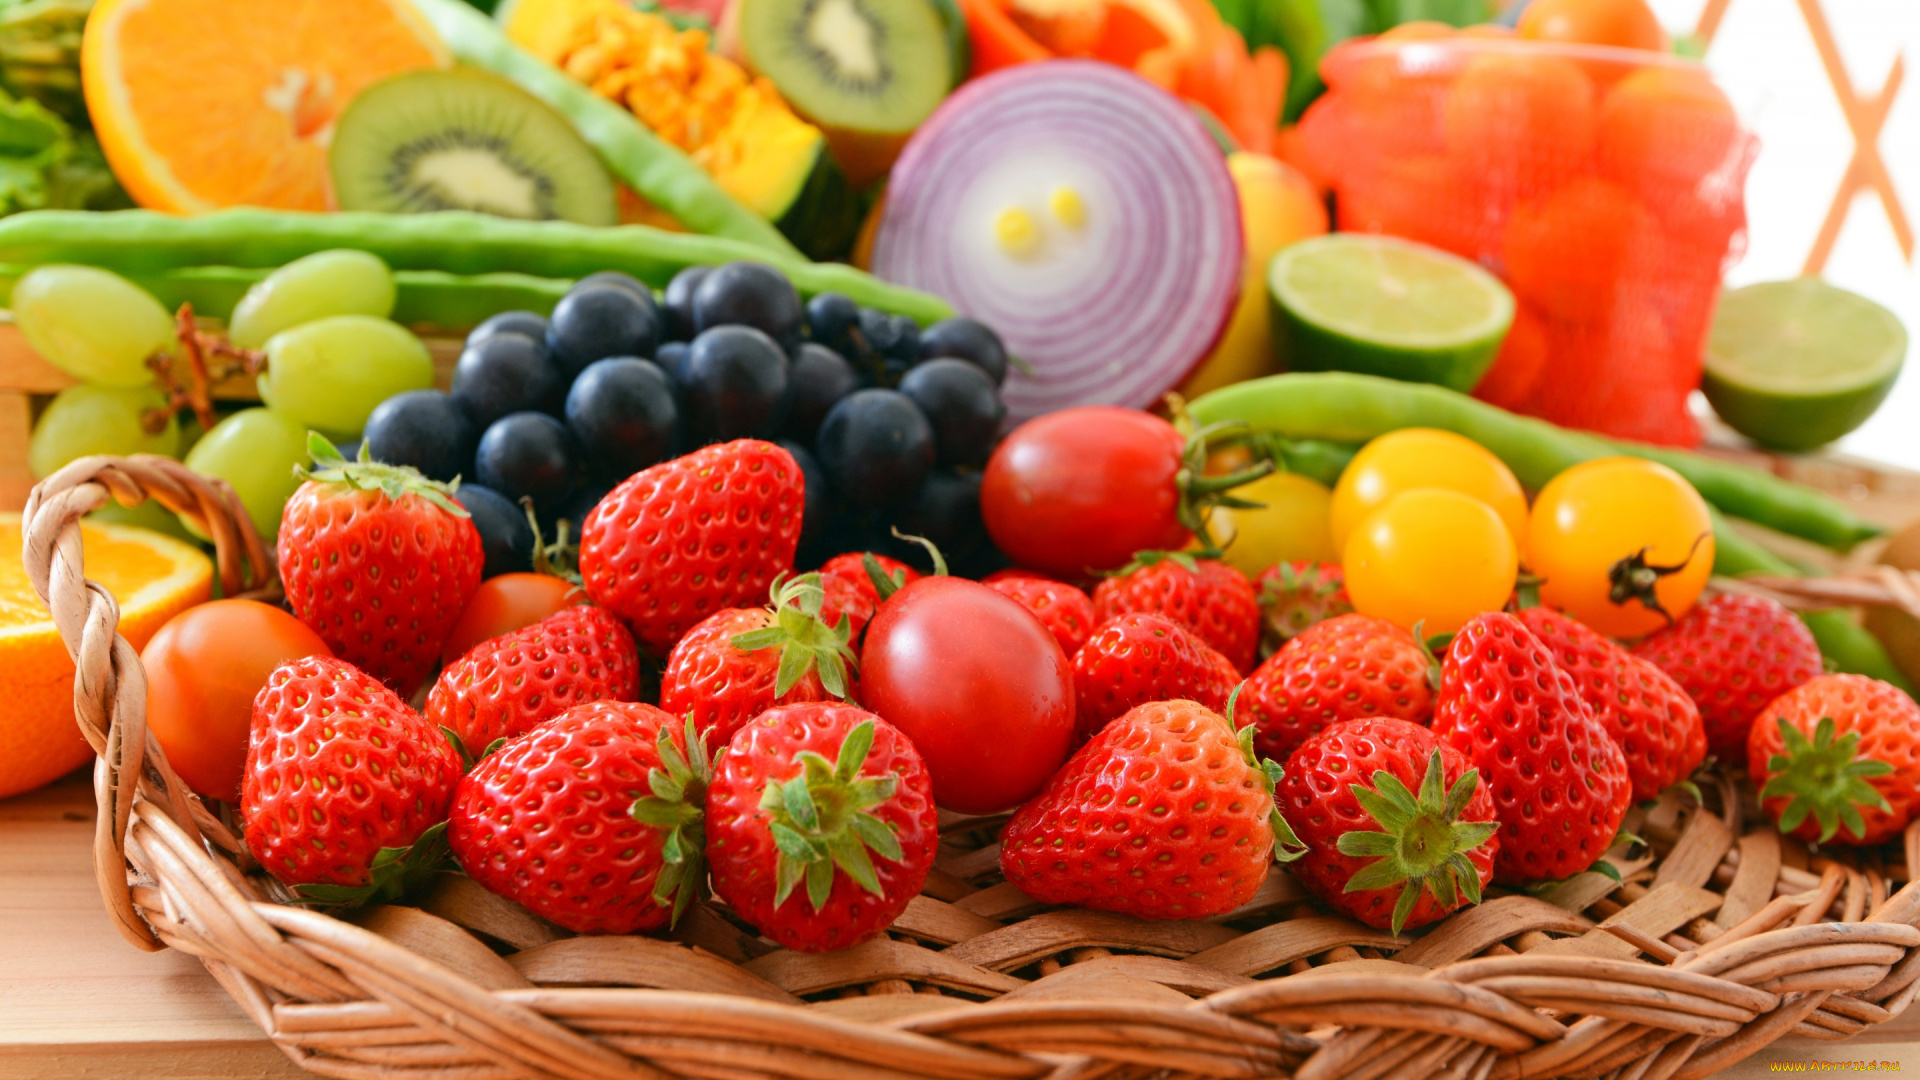 еда, фрукты, и, овощи, вместе, berries, овощи, vegetables, клубника, помидоры, fruits, виноград, fresh, ягоды, фрукты